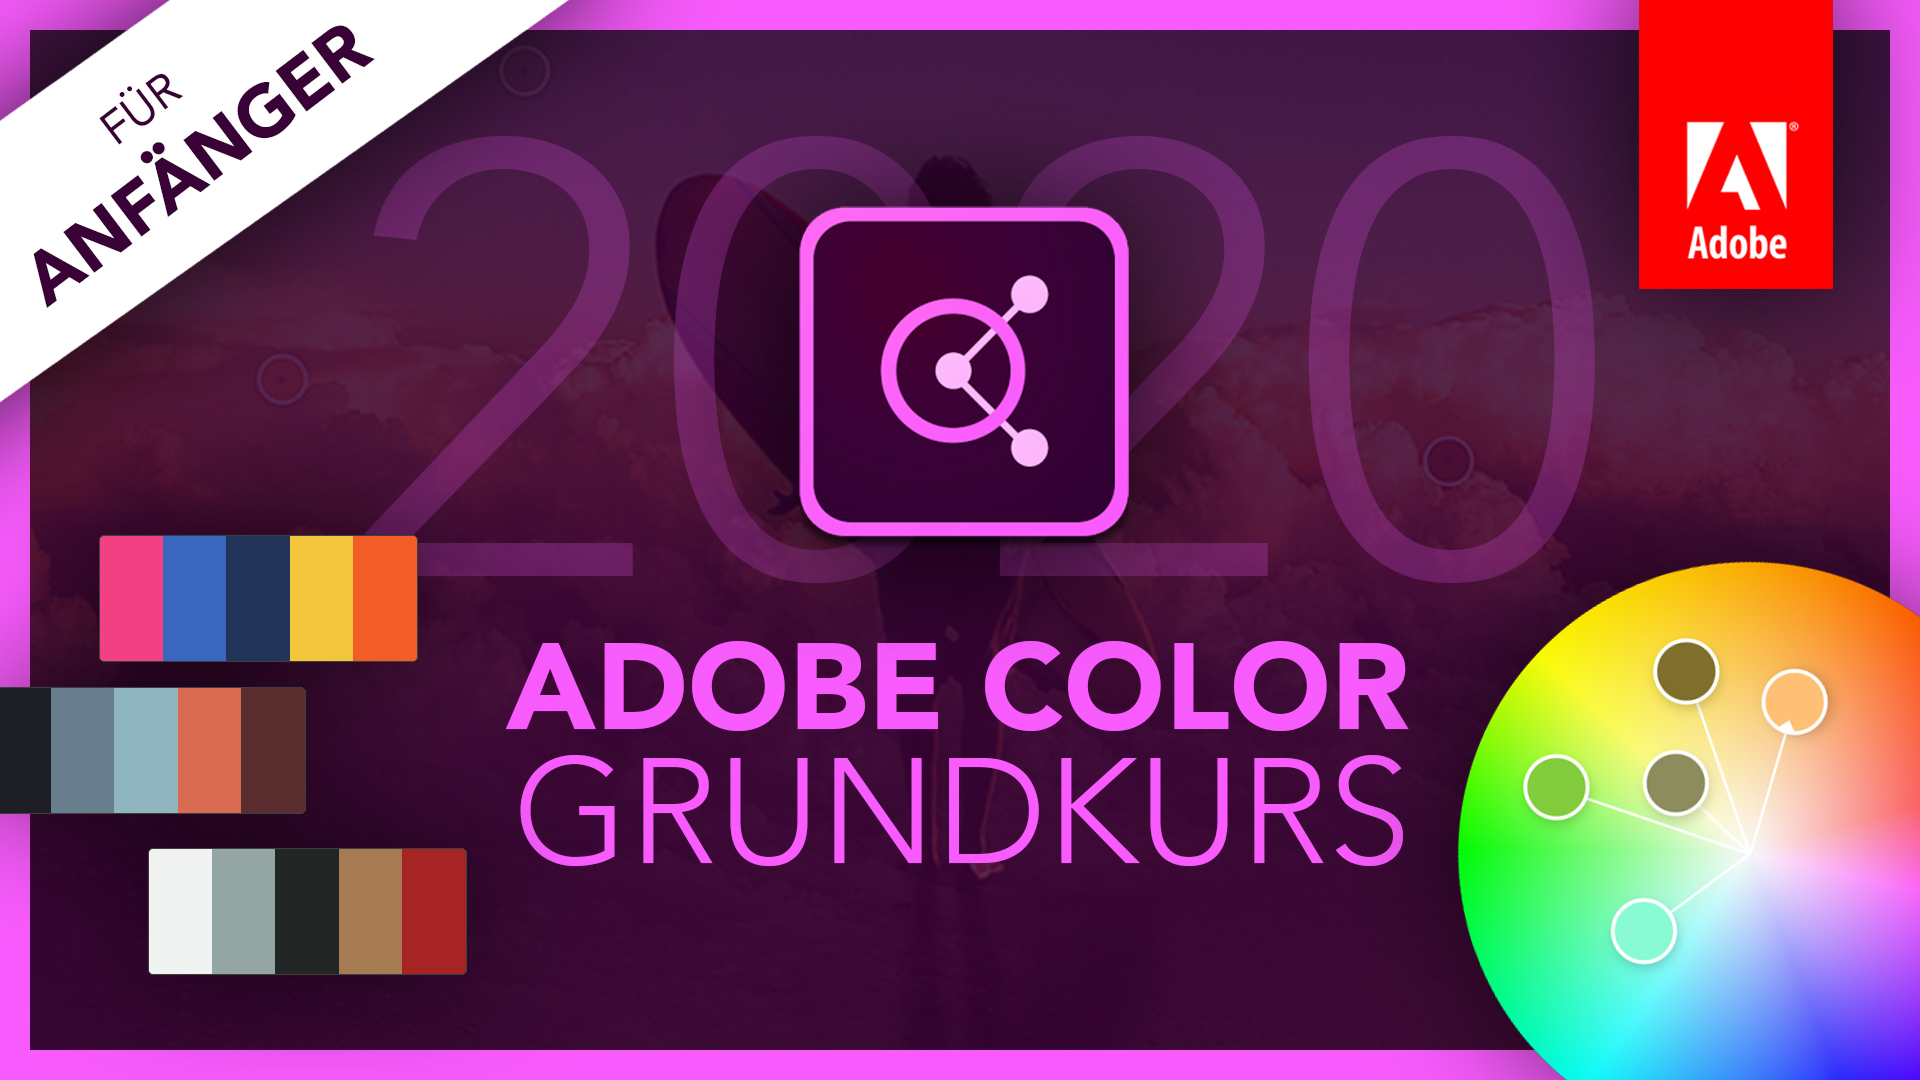 Adobe Color 2020 (Grundkurs für Anfänger) Deutsch